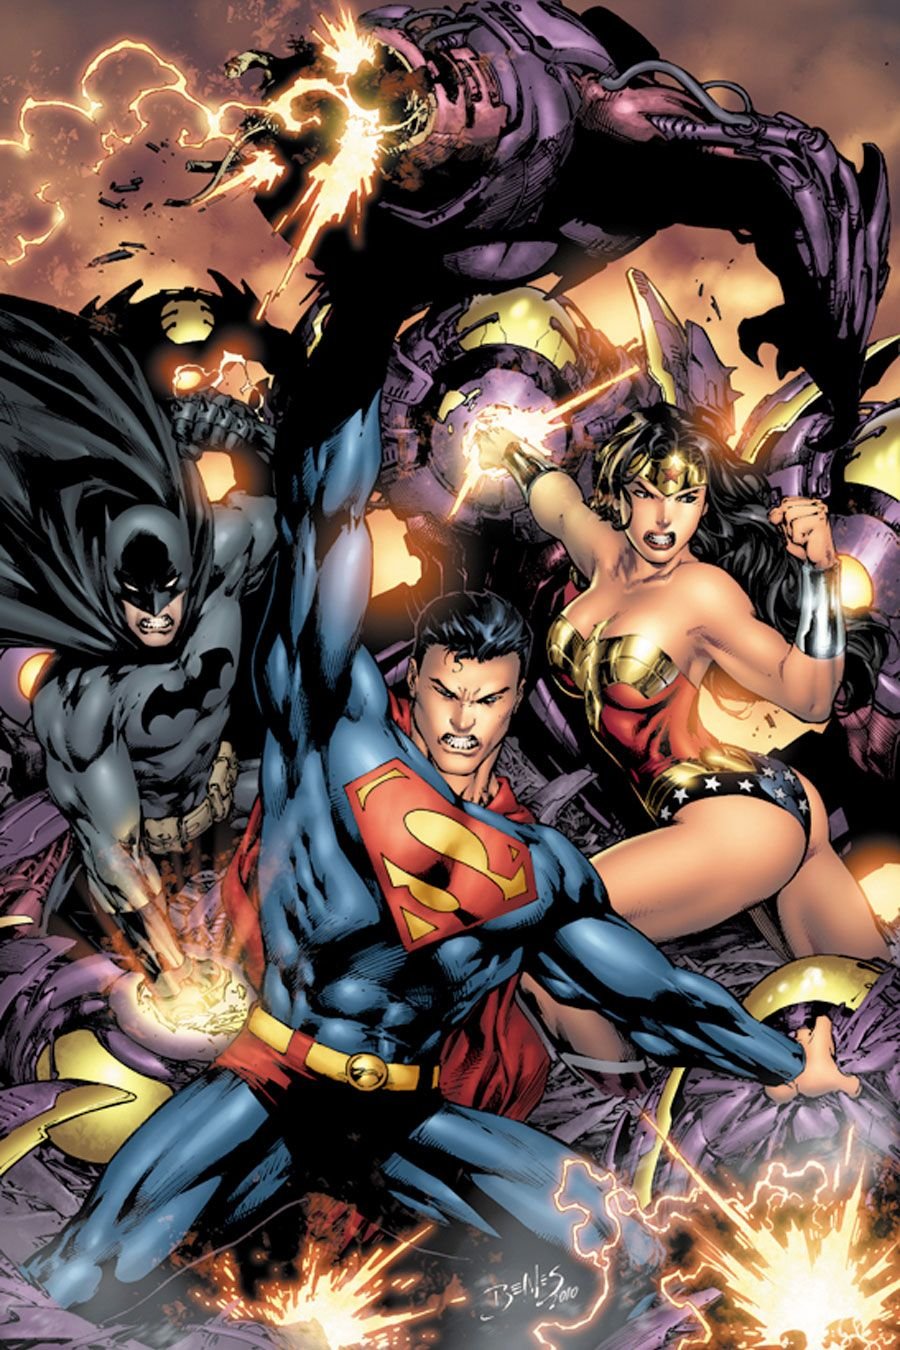 Marvel super man. DC Universe комиксы. Супермен Марвел. Супермен (расширенная Вселенная DC). Лига справедливости против Брейниака.